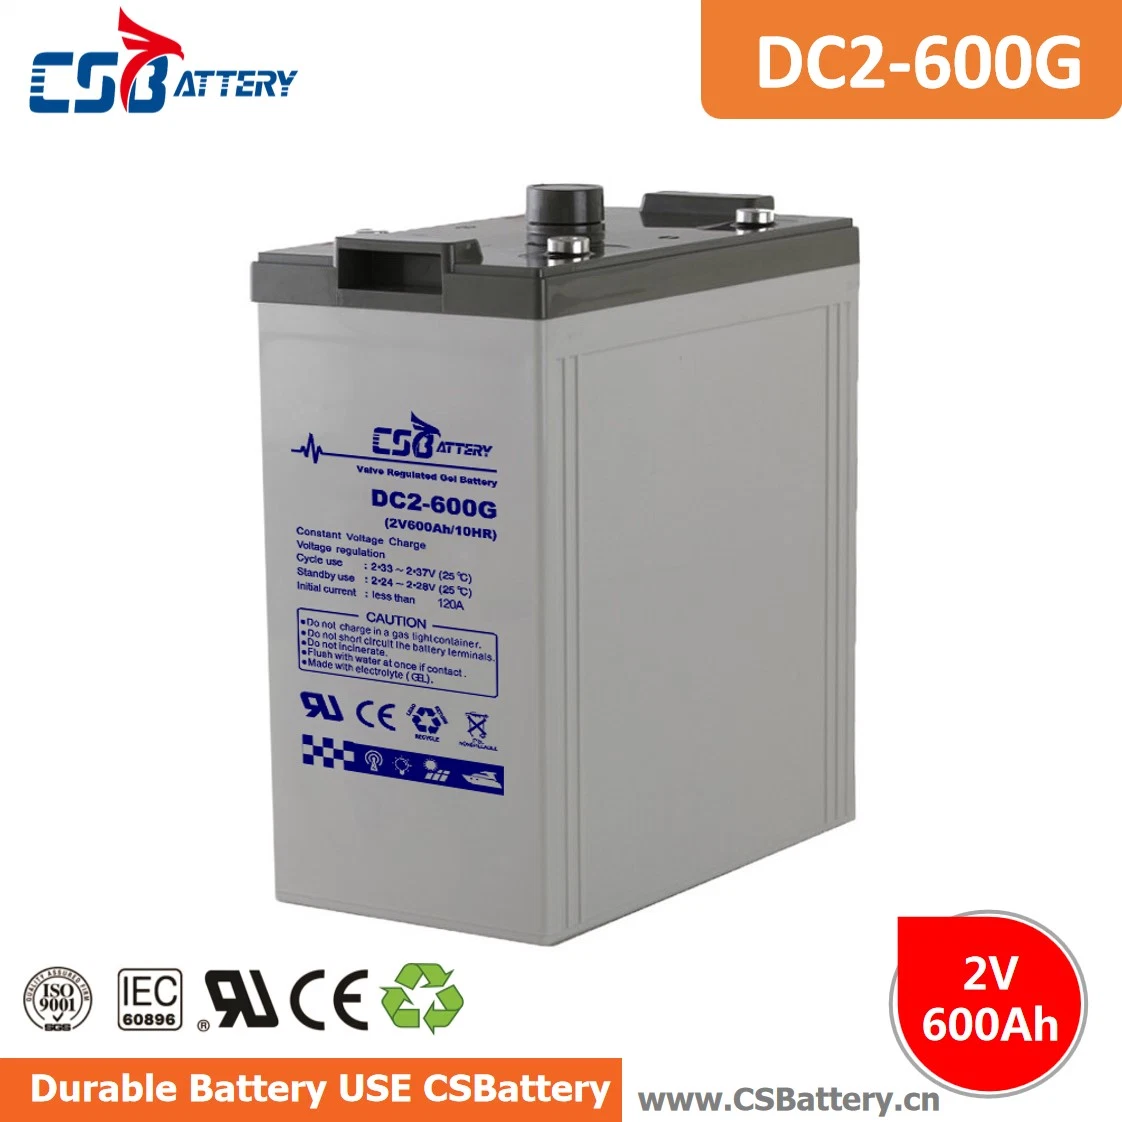 Csbattery 2V600Ah batería de plomo ácido de la energía solar y antirrobo GPS/Amy